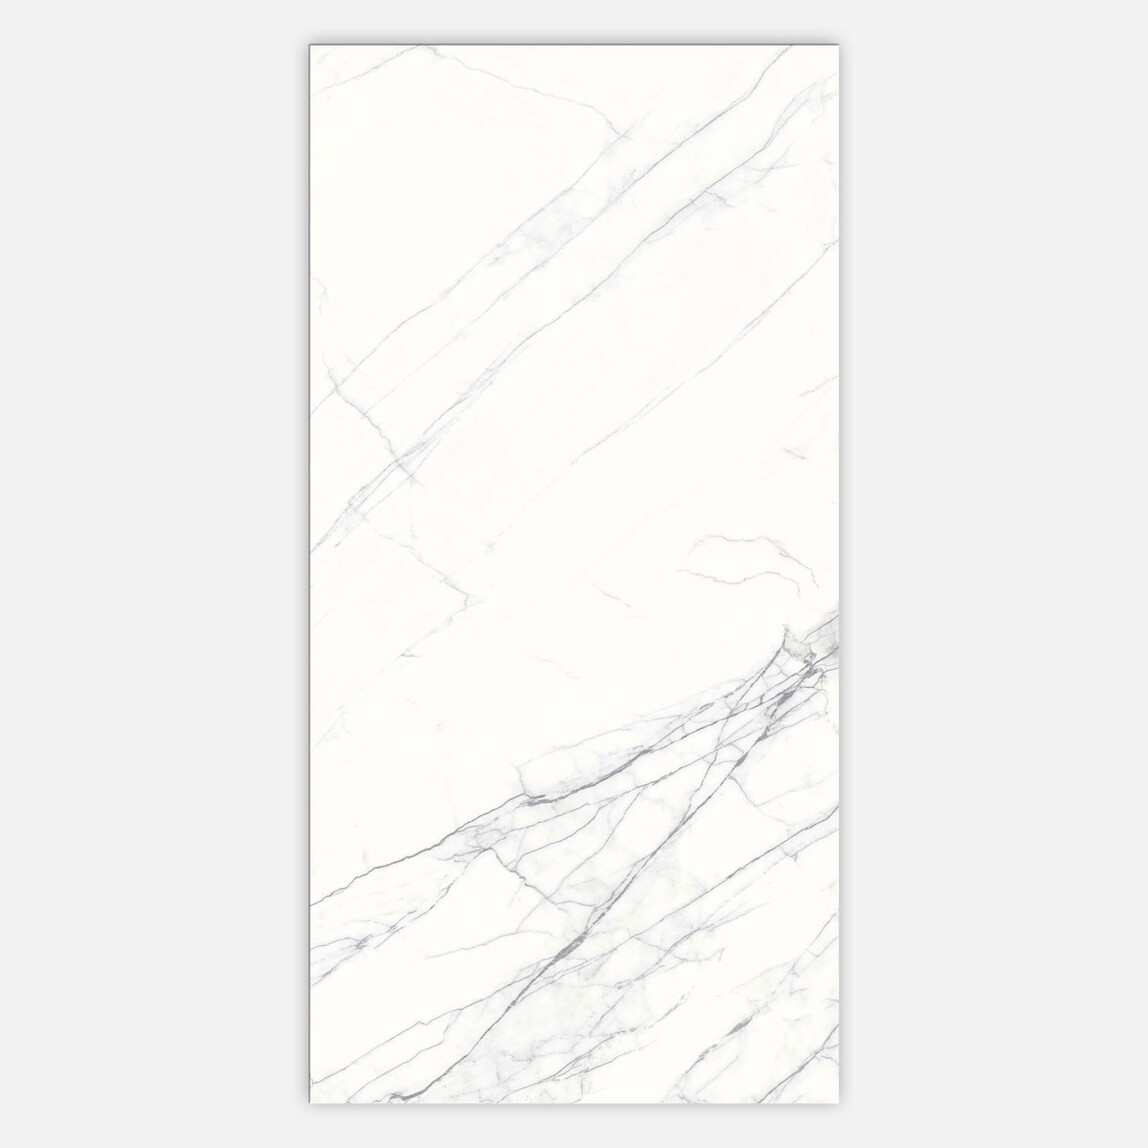    Duratiles Sempre Yer-Duvar Sırlı Beyaz Mat 30x60cm 